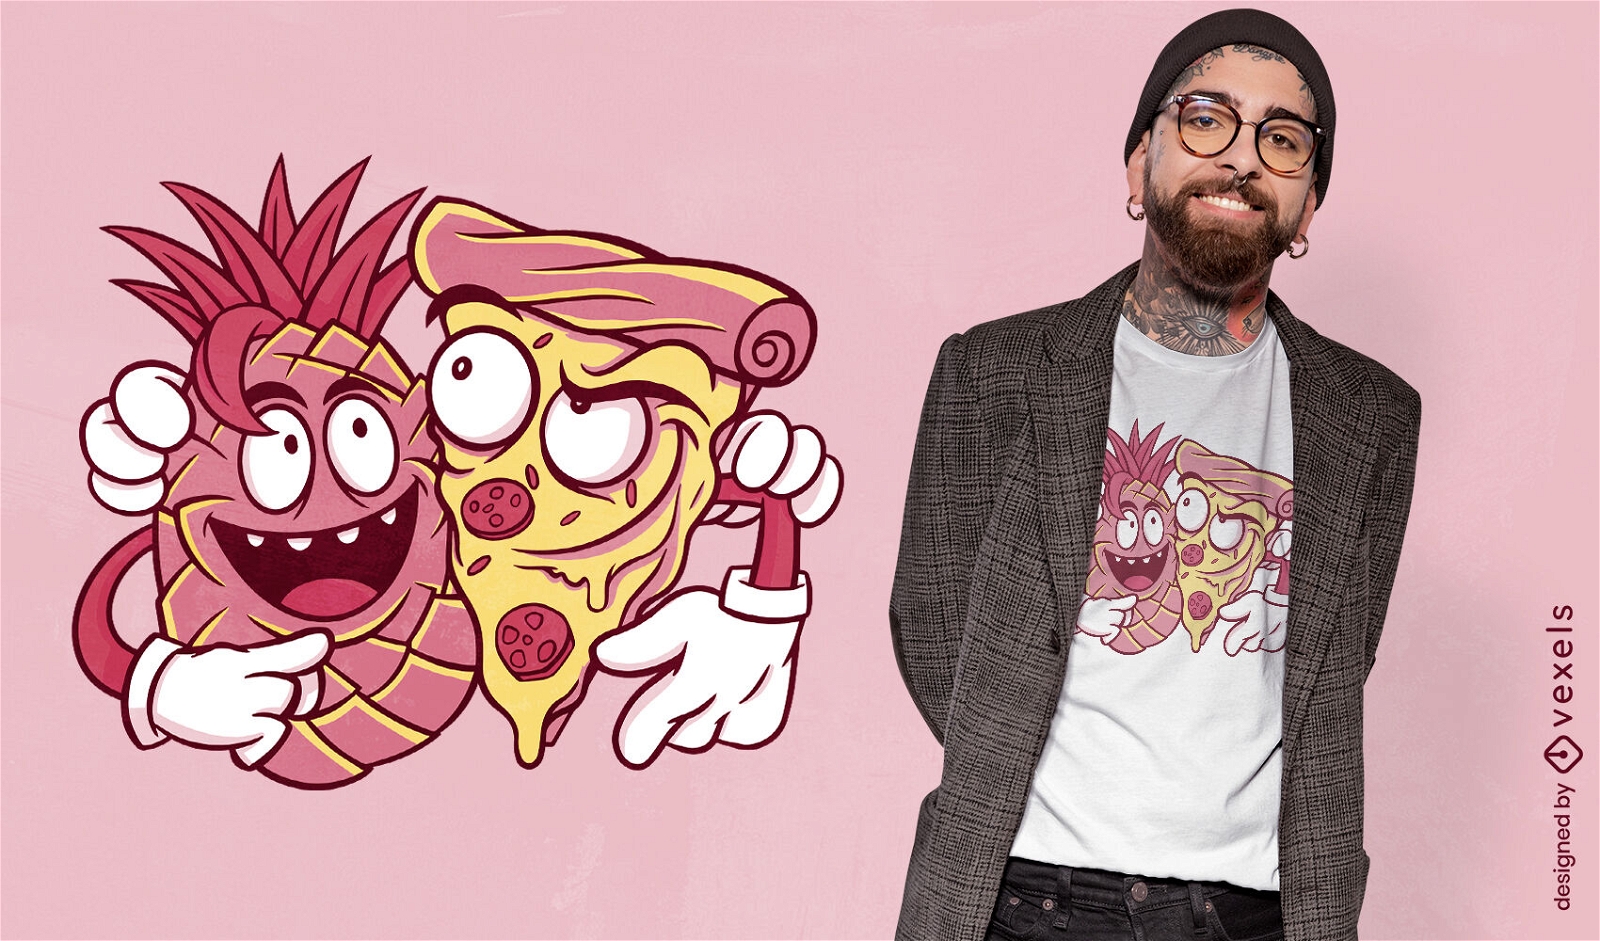 Dise?o de camiseta de amigos de pi?a y pizza.